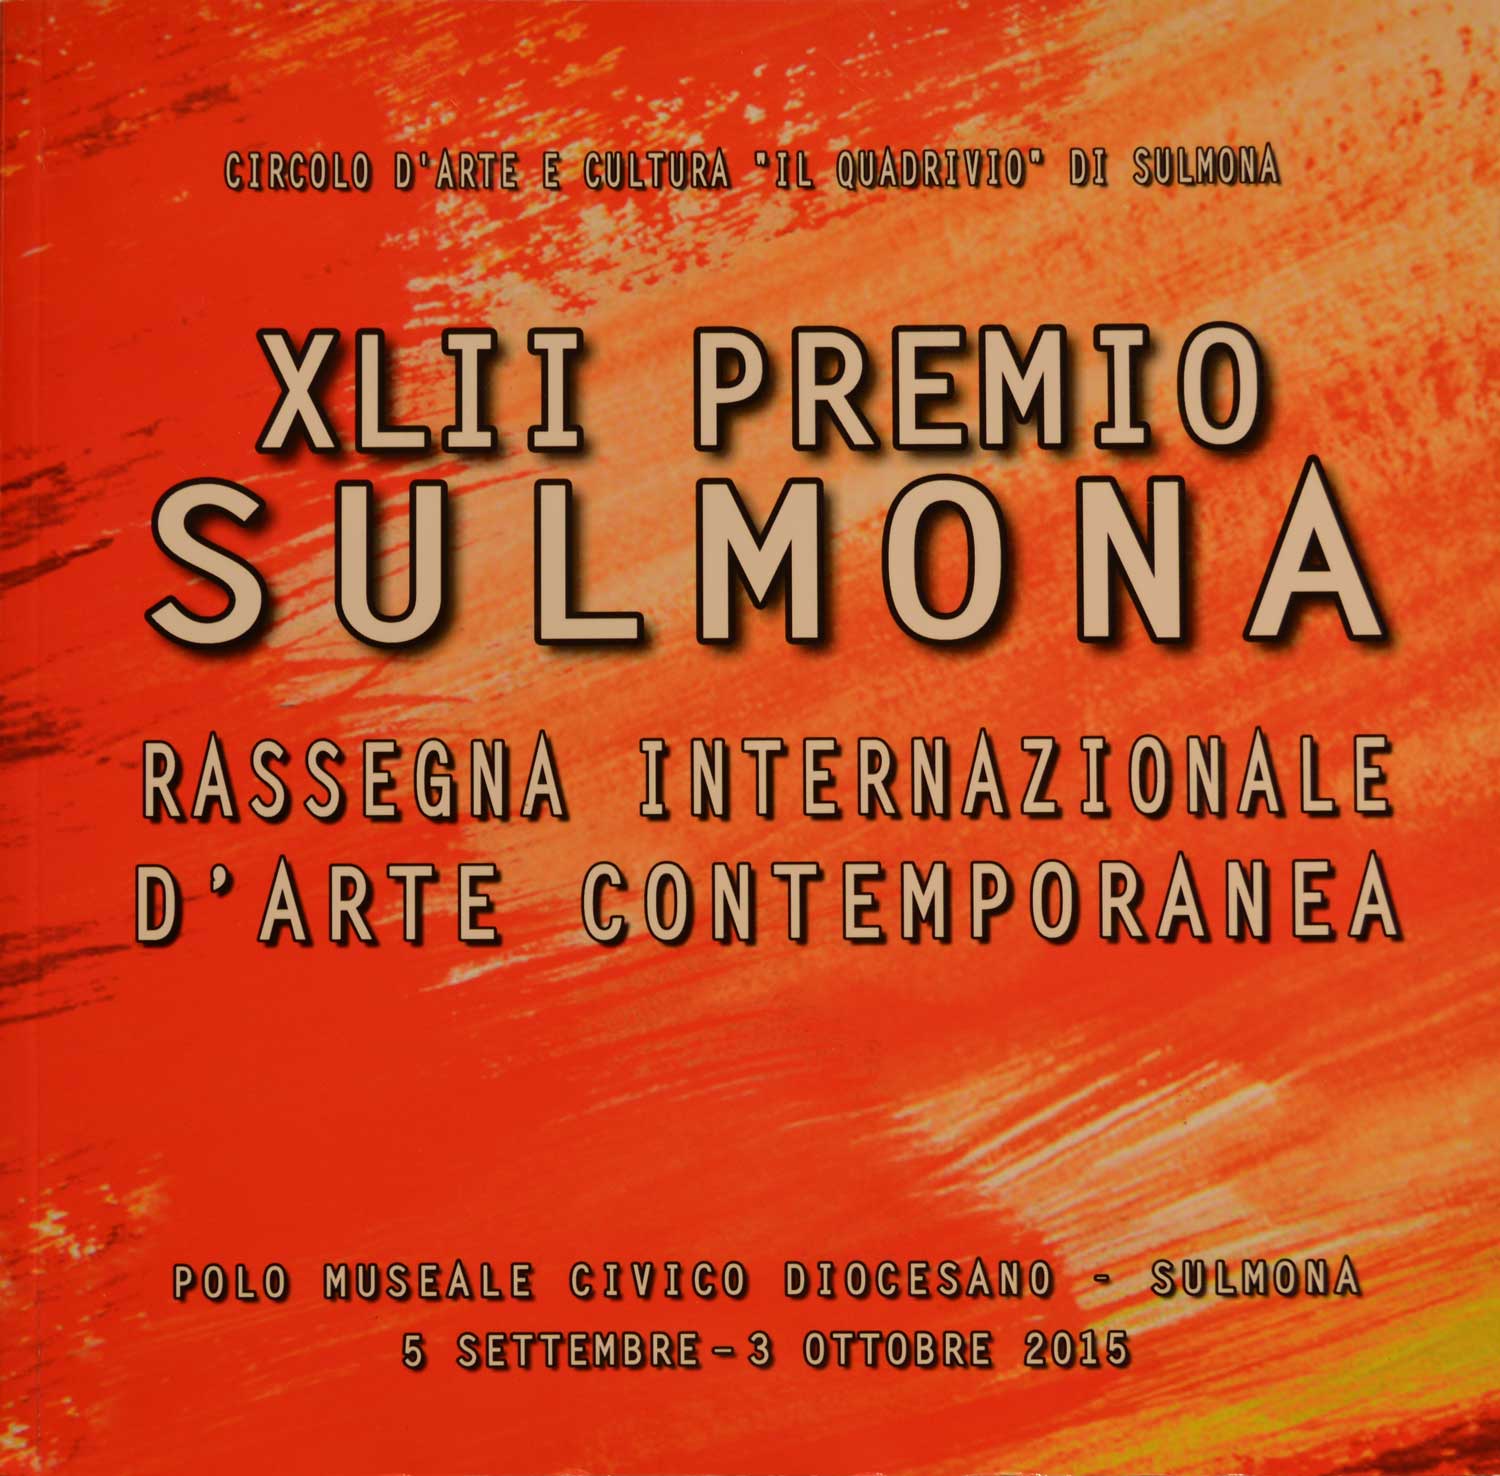 2015 Premio Sulmona  Polo museale diocesano - Sulmona